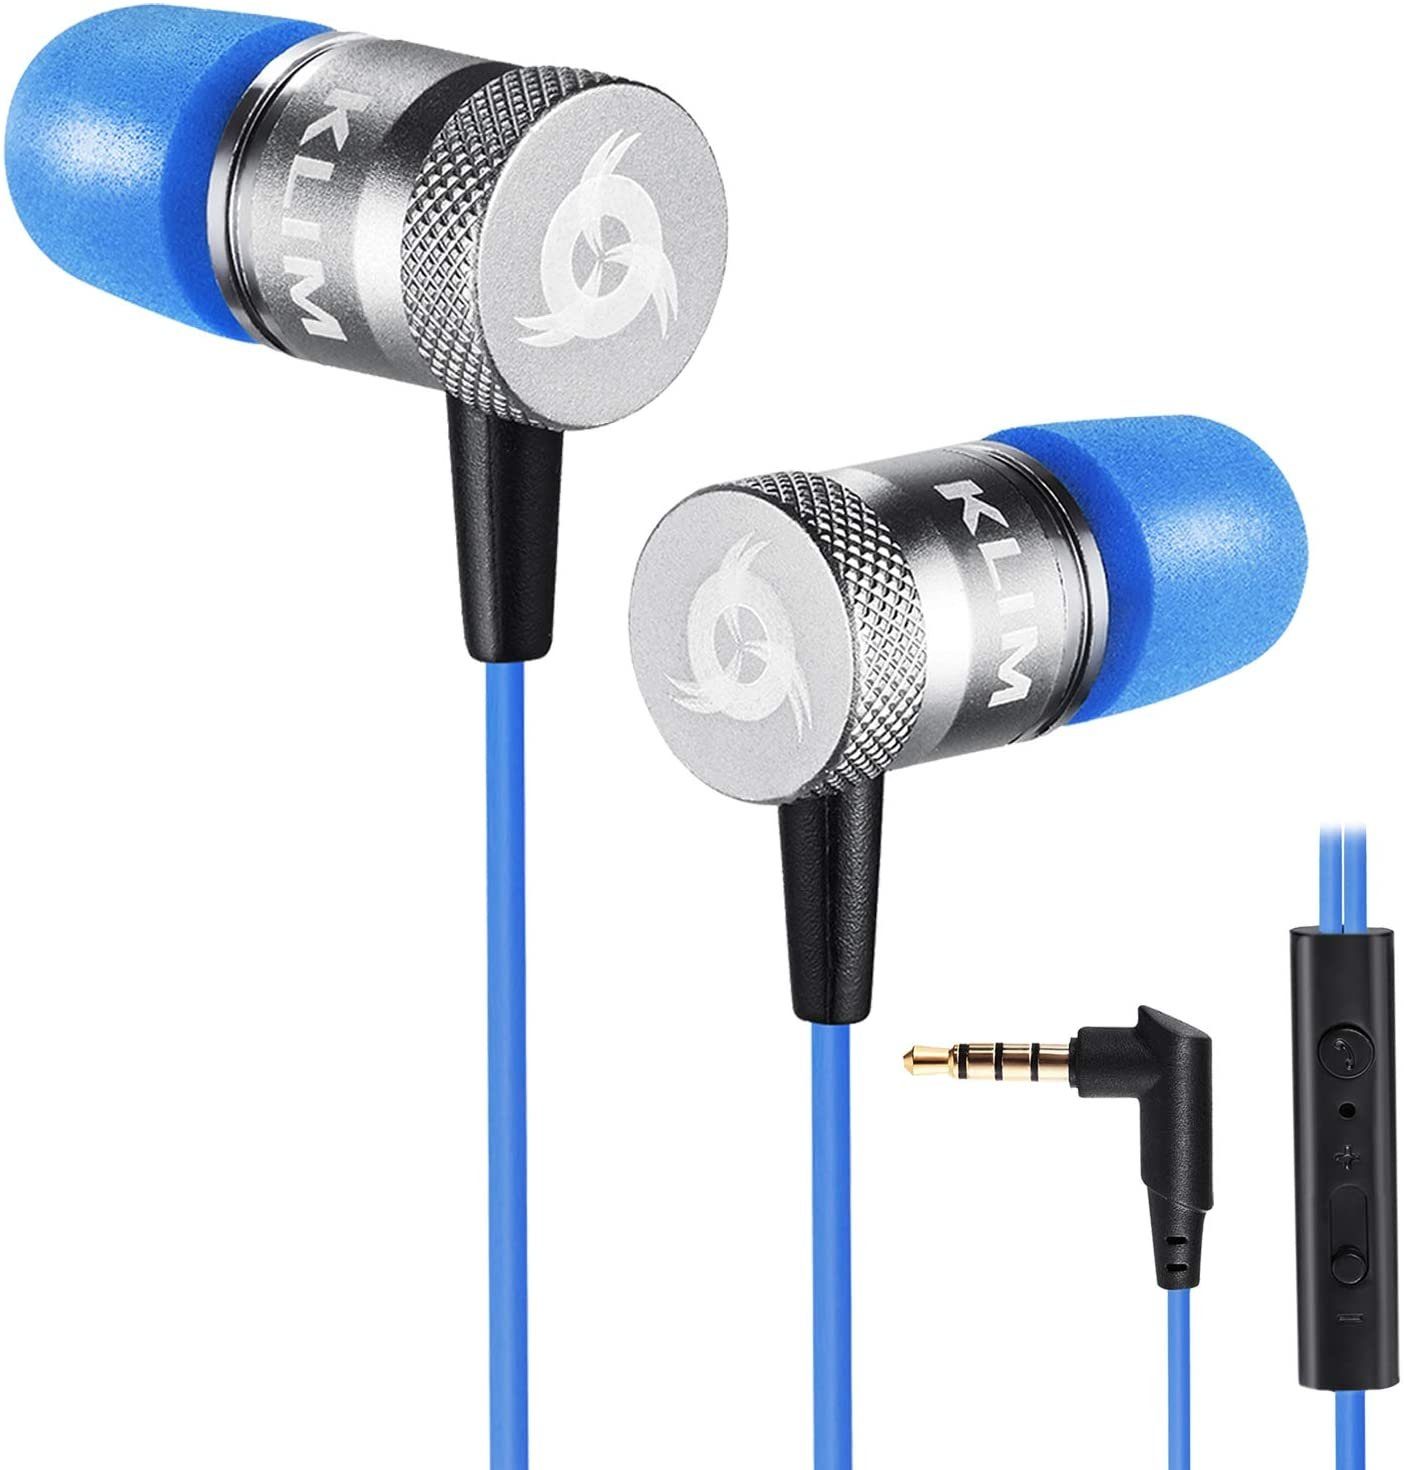 KLIM Fusion In-Ear-Kopfhörer (3,5mm Klinkenanschluss, Memory Foam Stöpsel) Blau